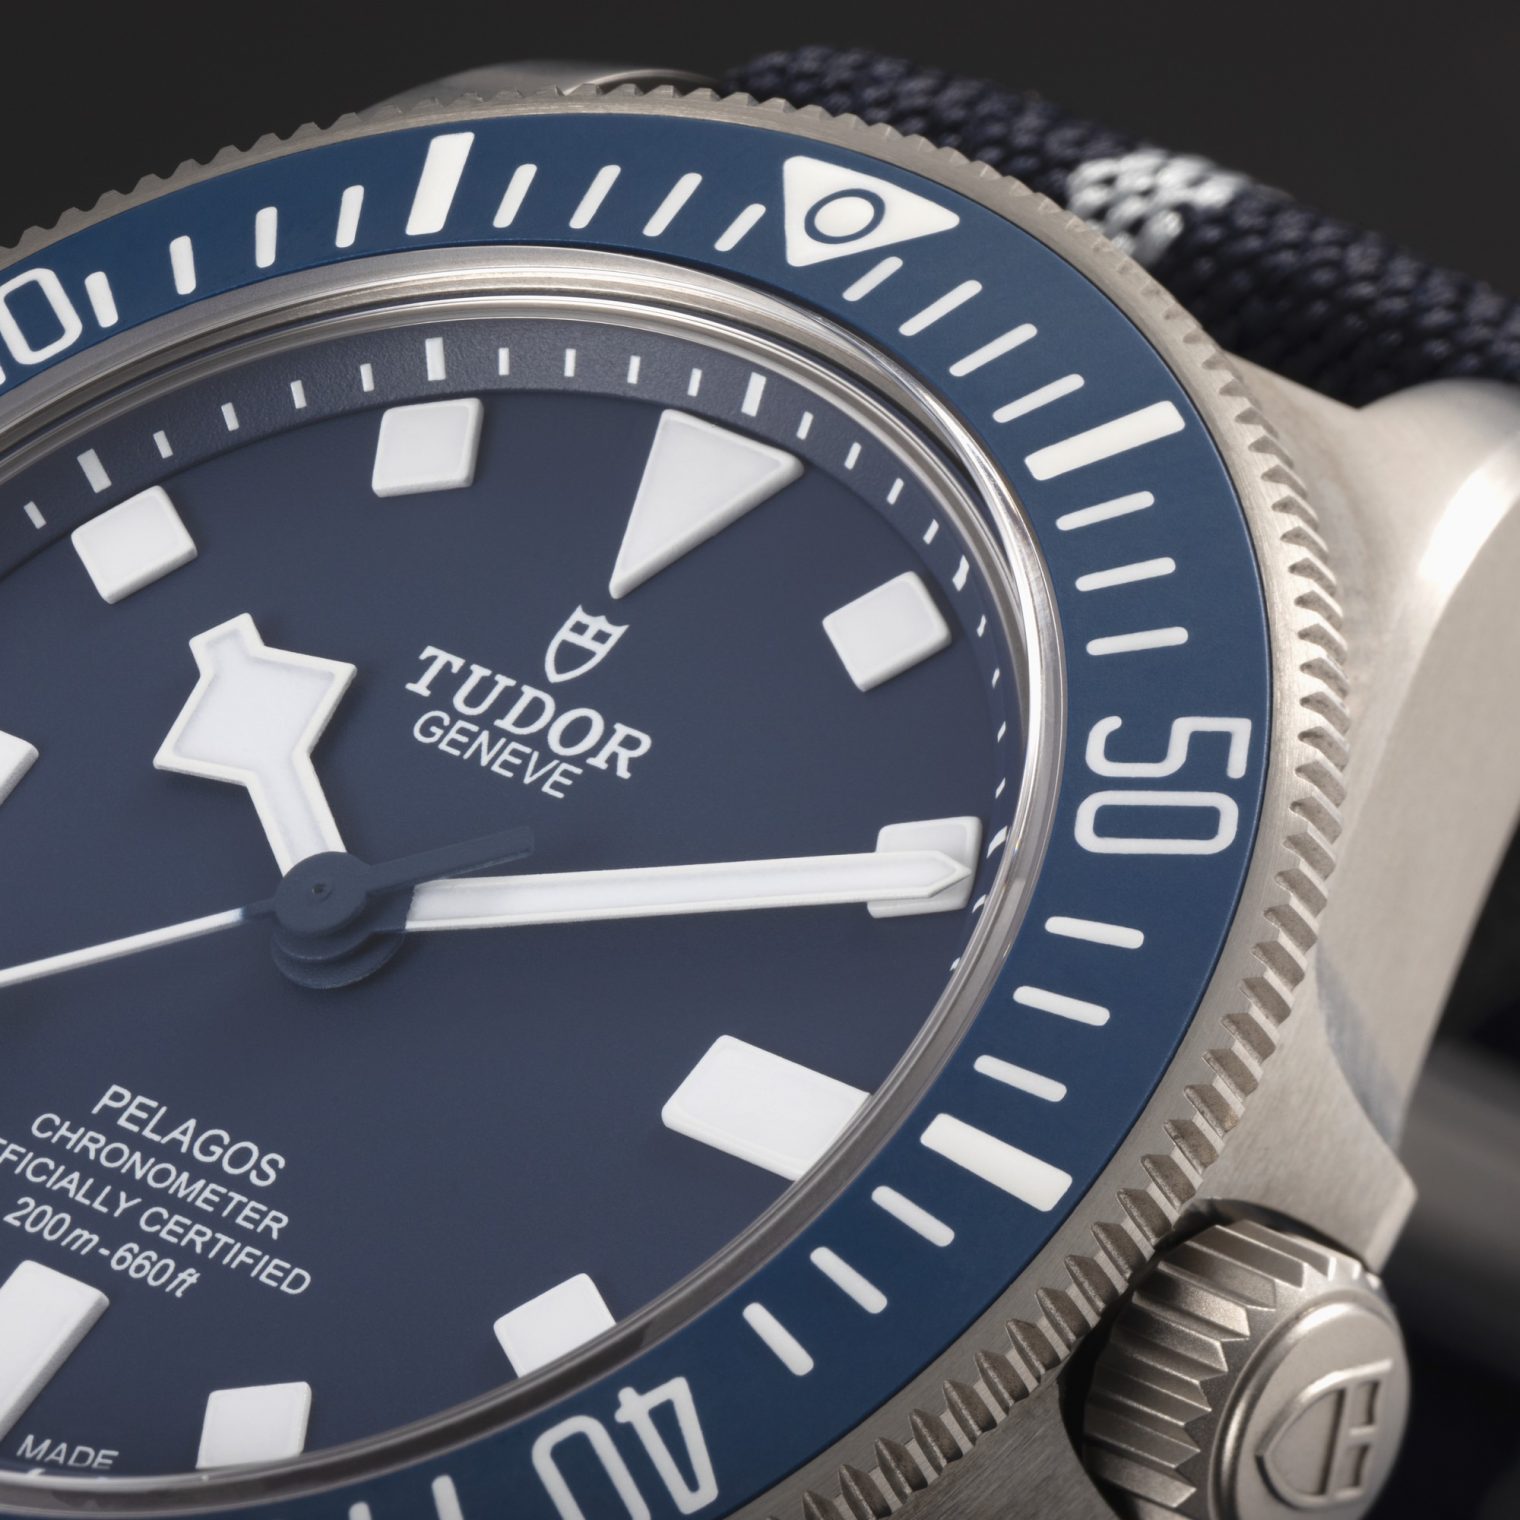 Tudor Pelagos FXD M25707B:21-0001 Detalle